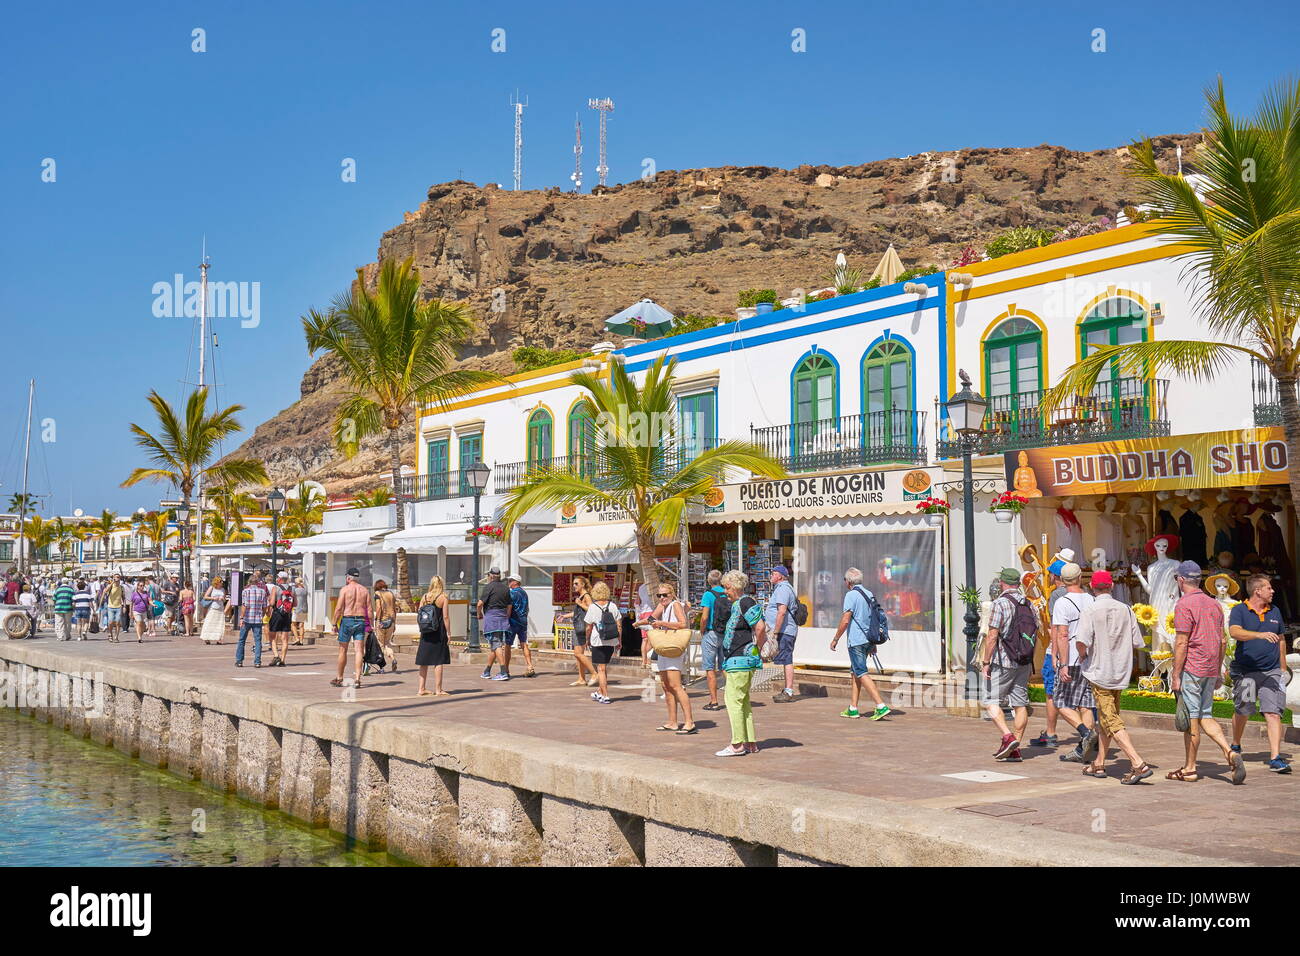 Canary Islands, Gran Canaria, Puerto de Mogan, Spain Stock Photo